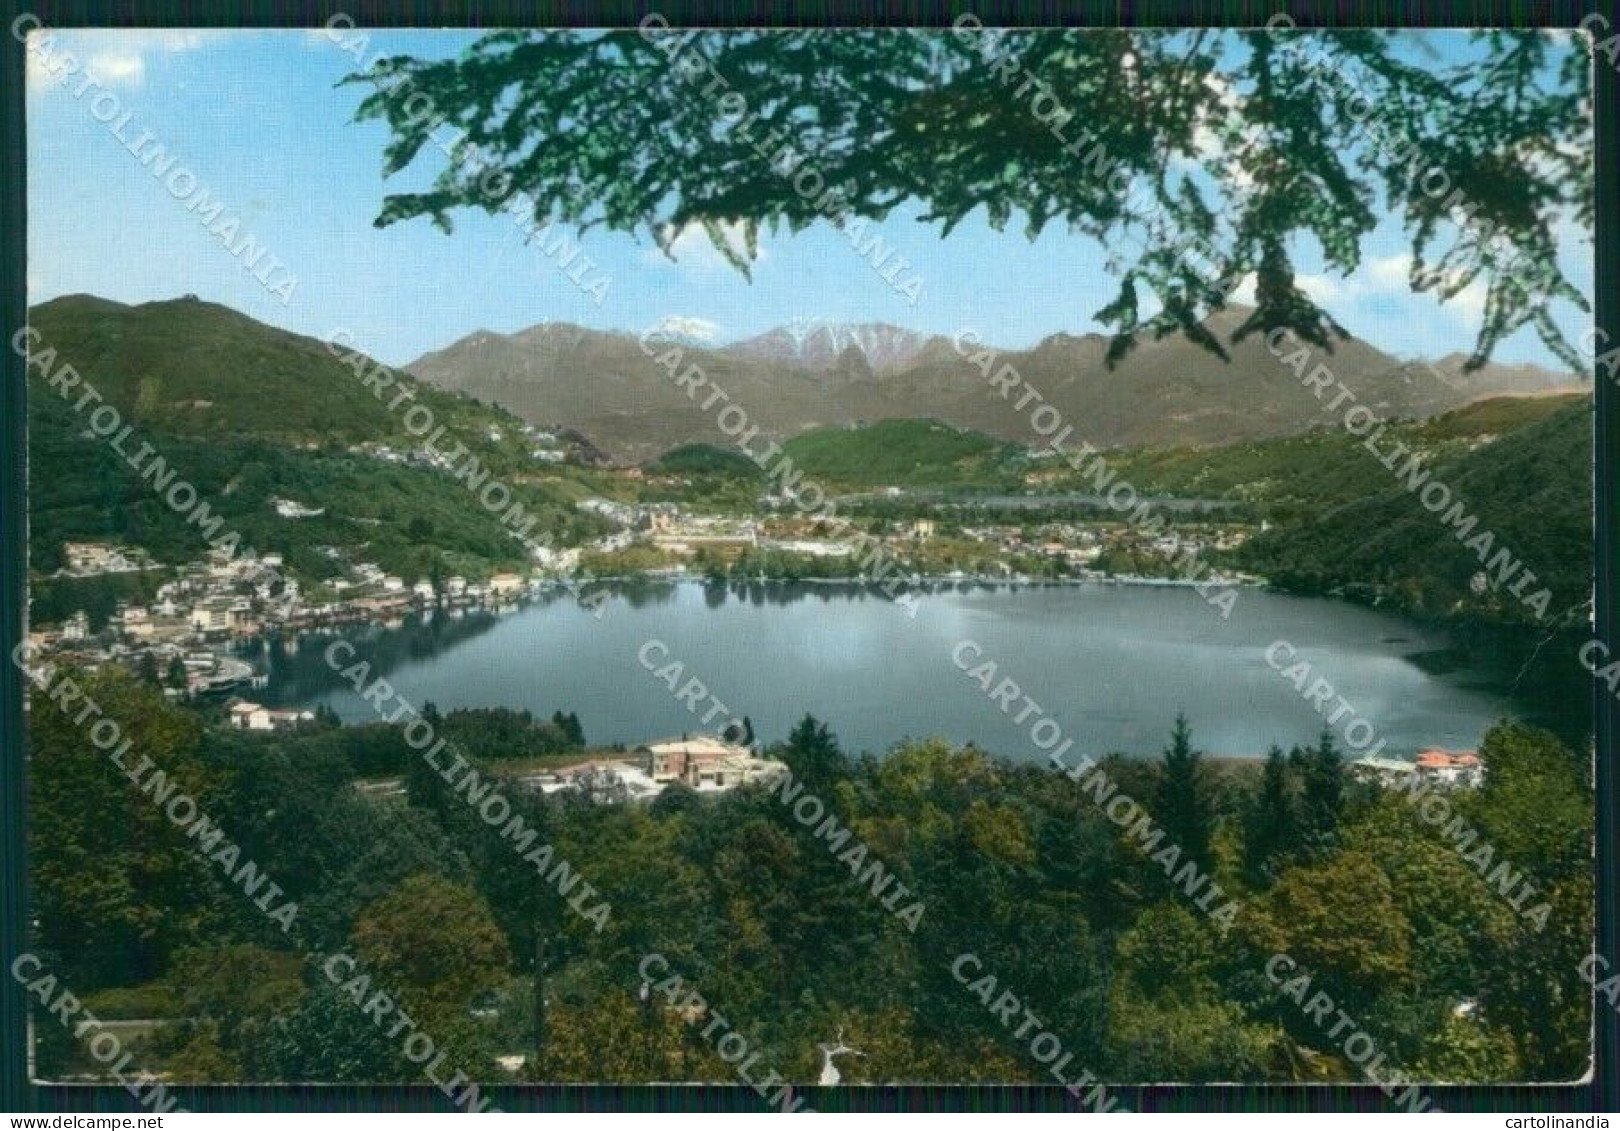 Svizzera Ponte Tresa Lago Di Lugano STRAPPINO PIEGA FG Foto Cartolina HB4975 - Sondrio